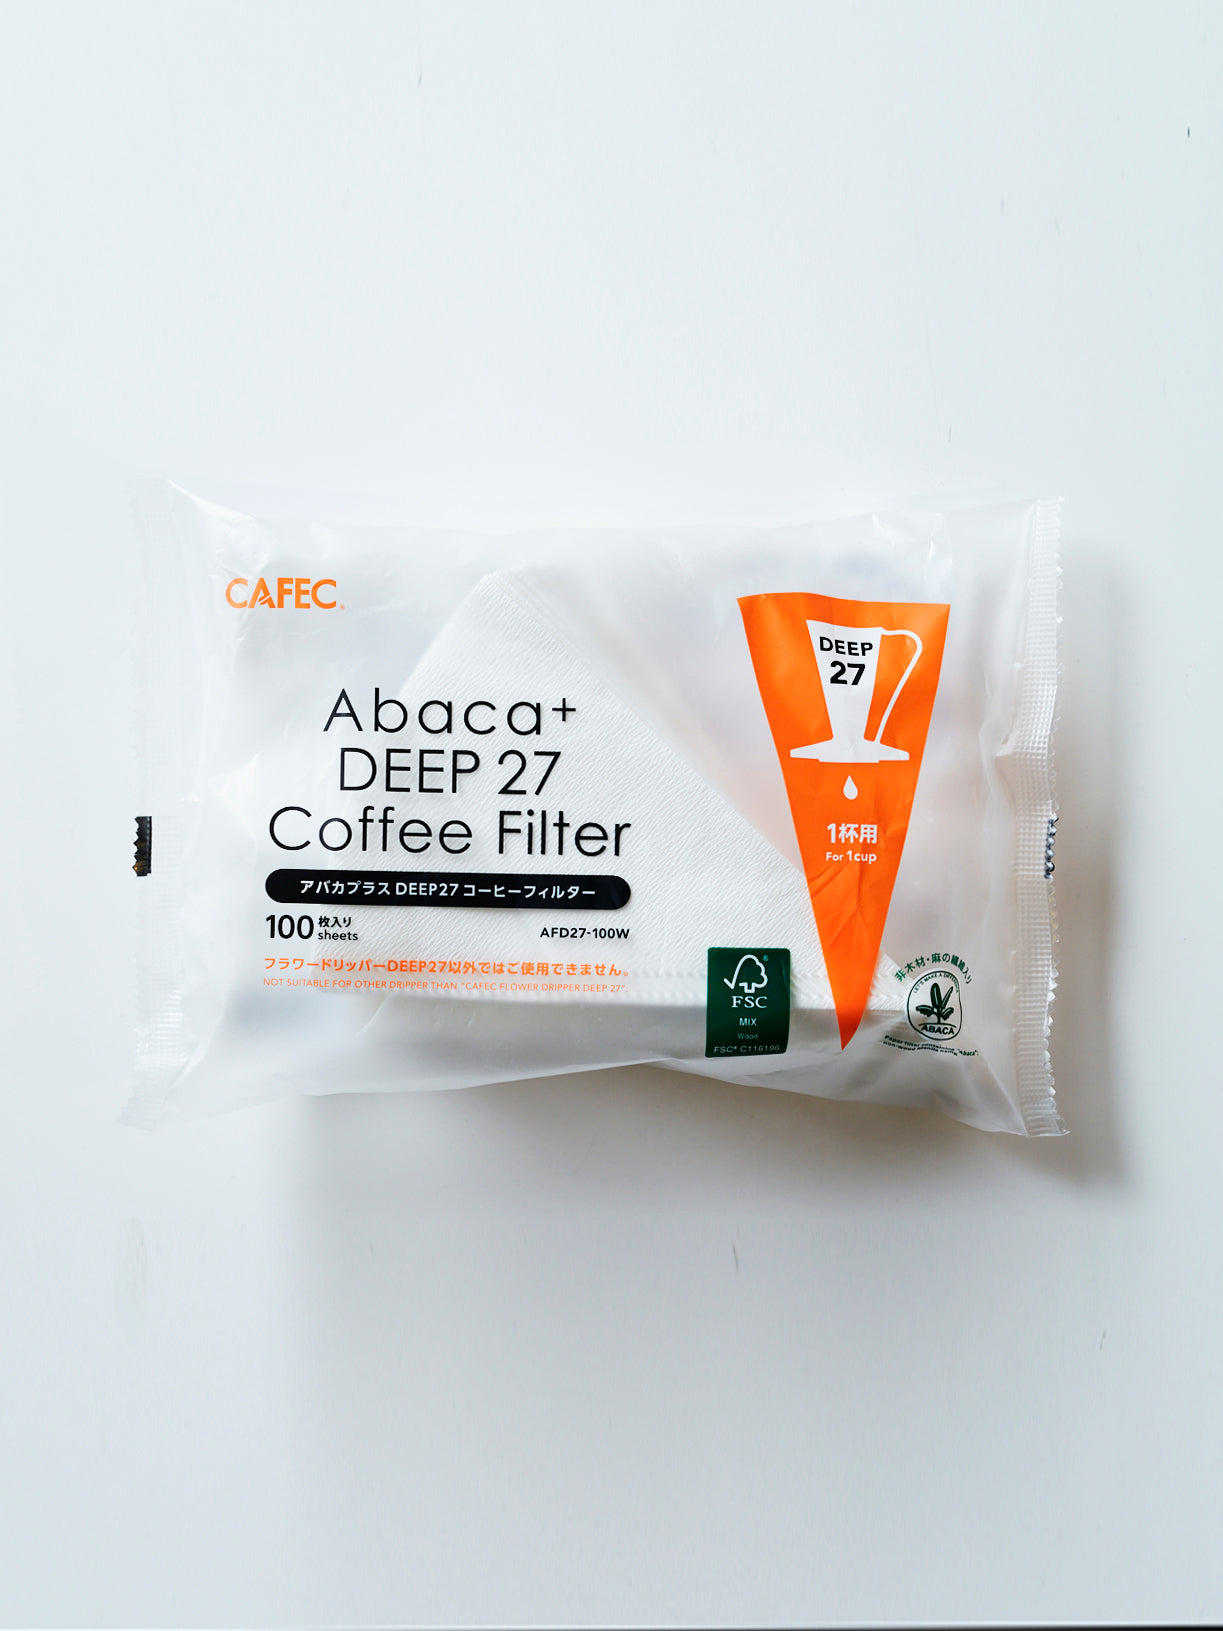 アバカプラス DEEP 27 専用ペーパーコーヒーフィルター